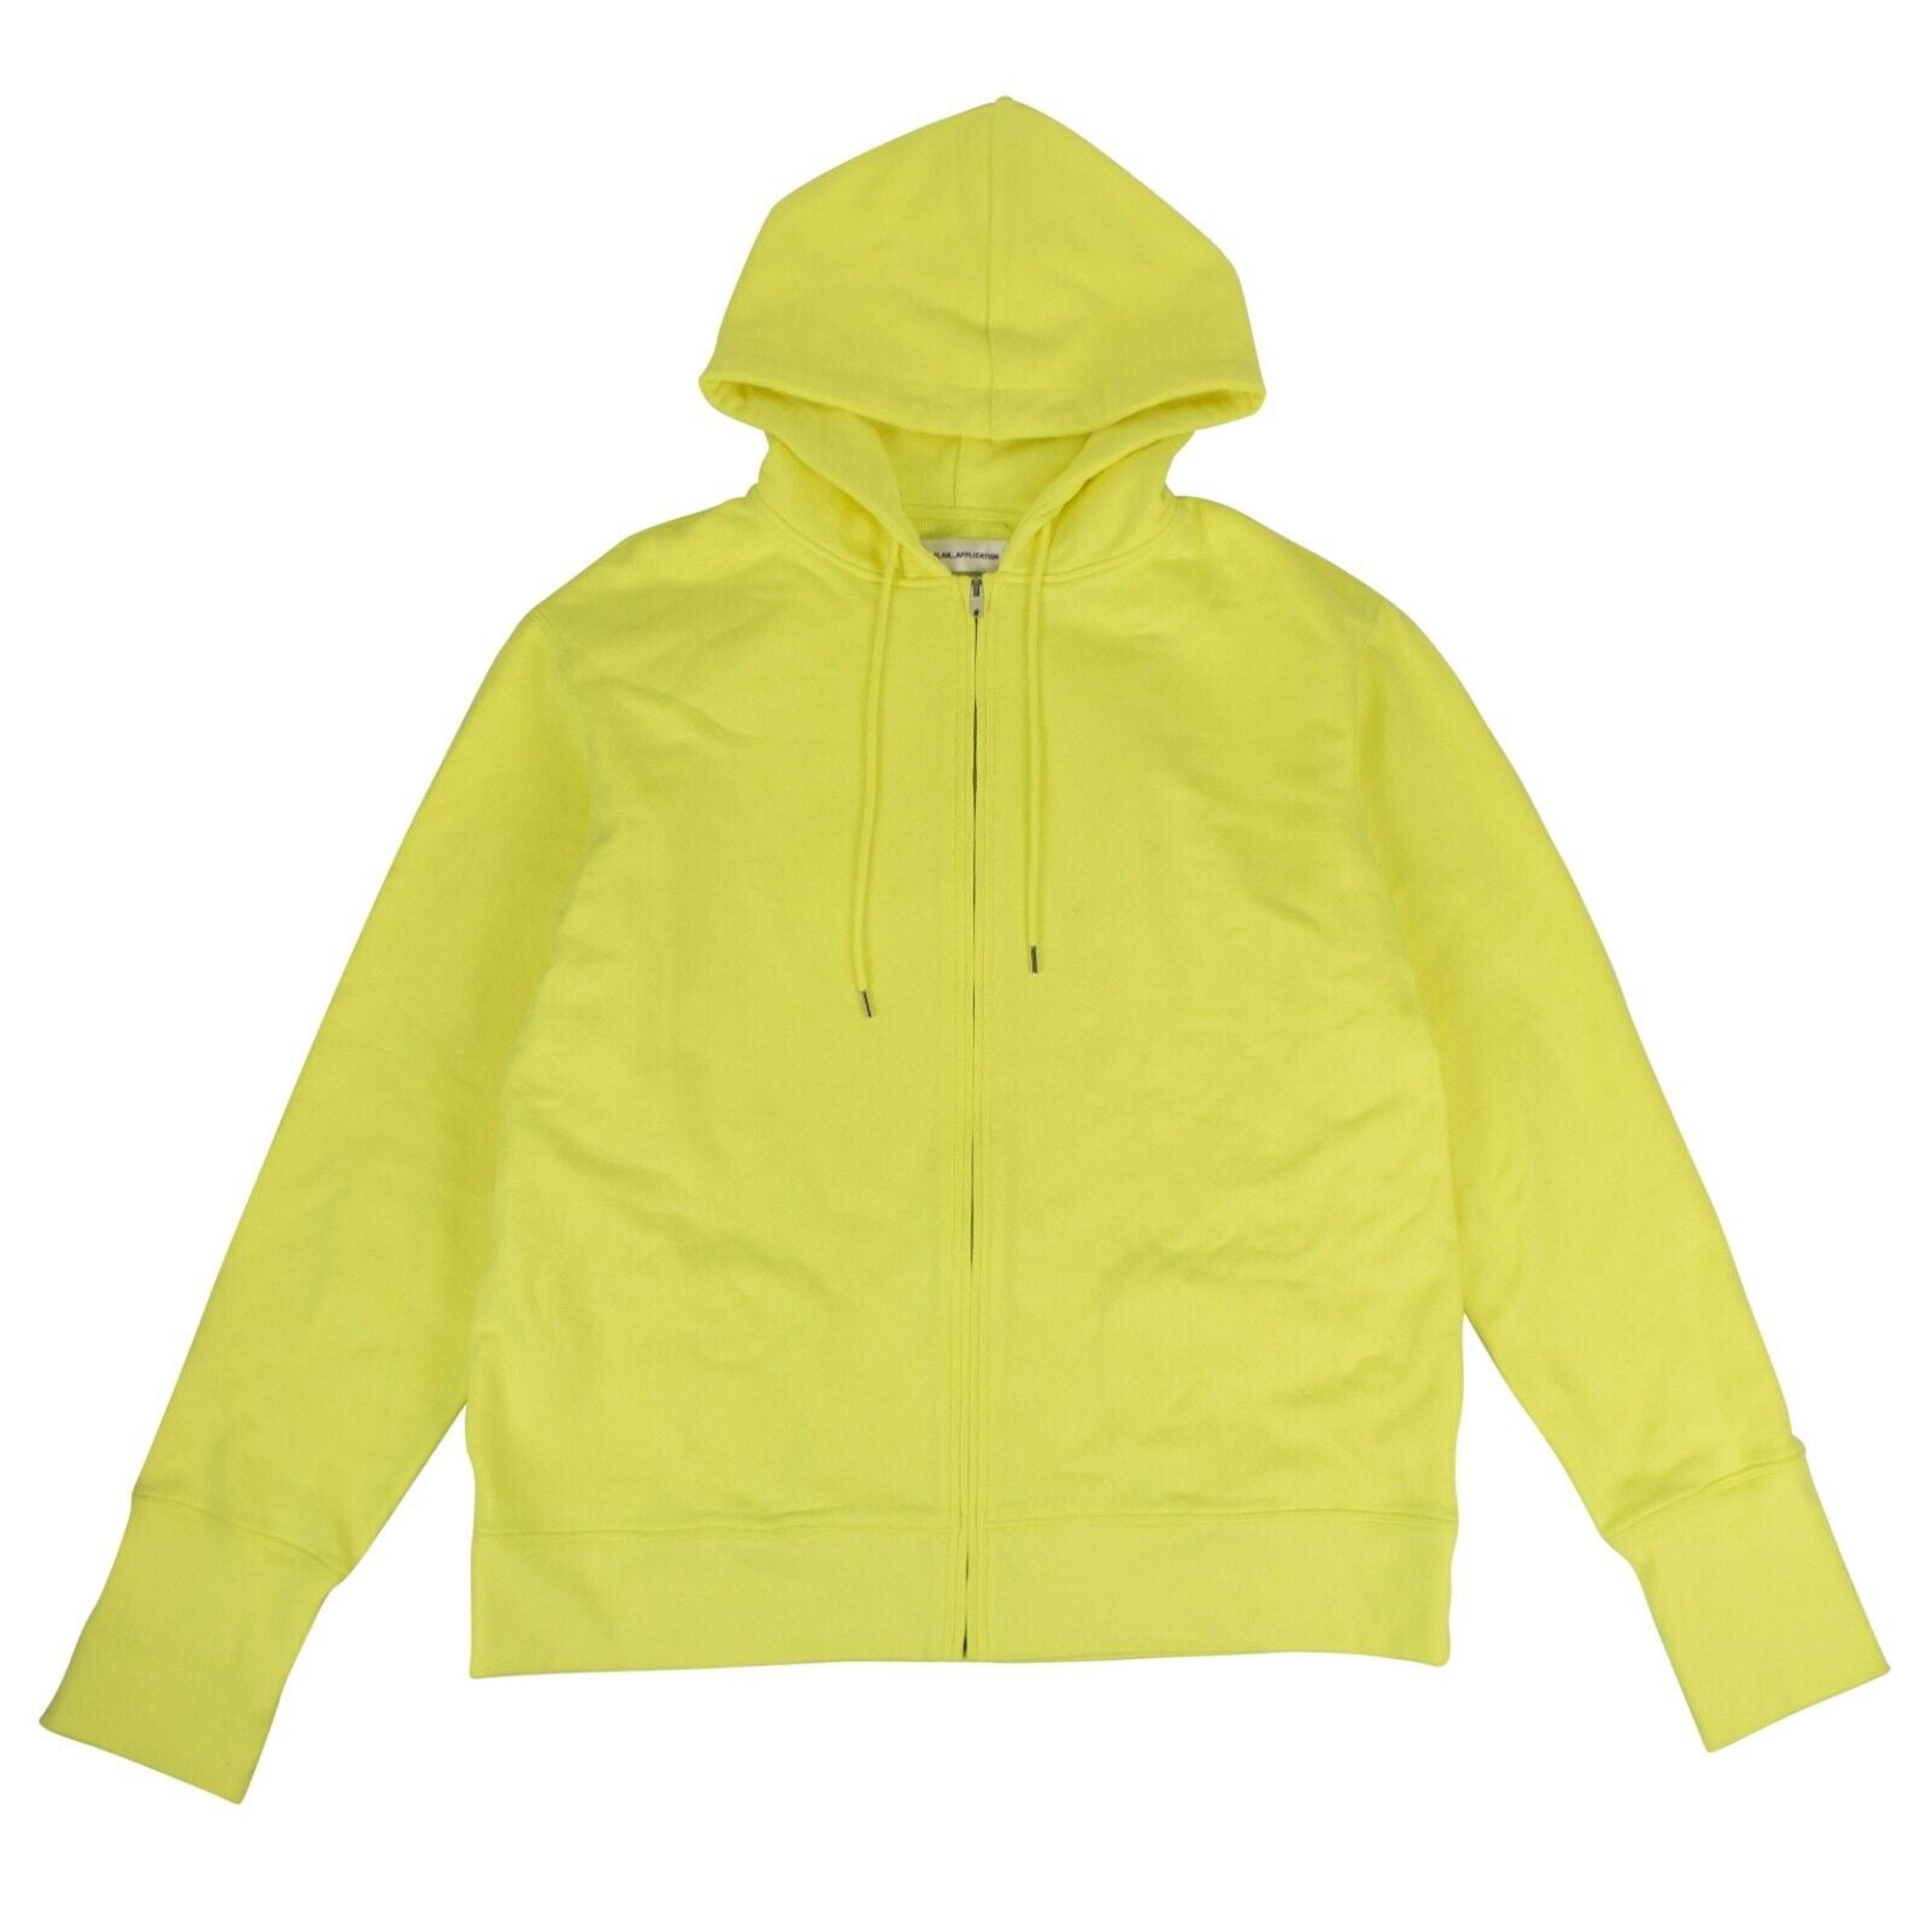 Alternate View 1 of Neon Yellow Full Zip Sweatshirt